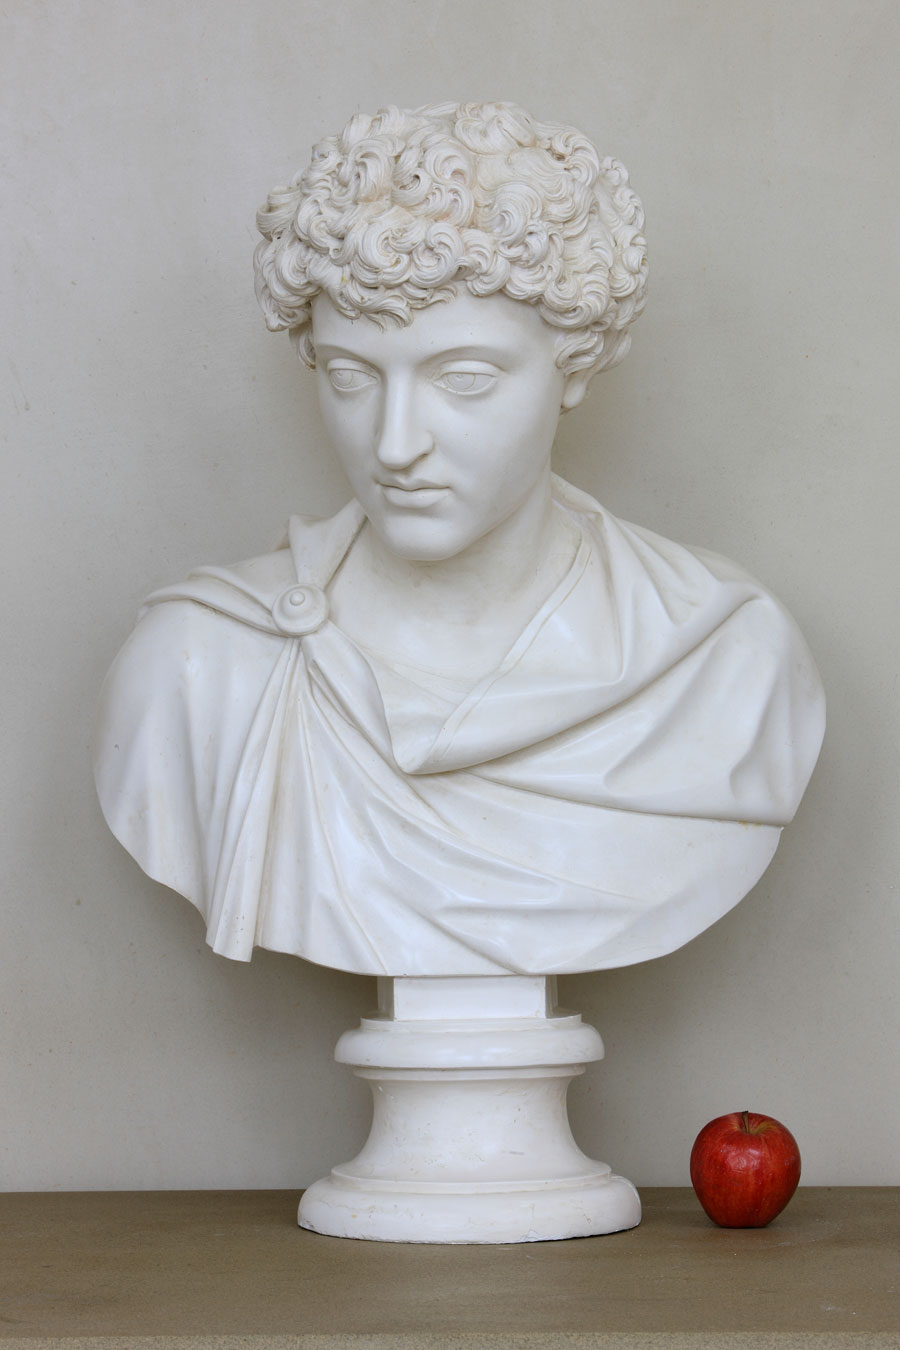 Copy of a Marble of The Caesar Marcus Aurelius